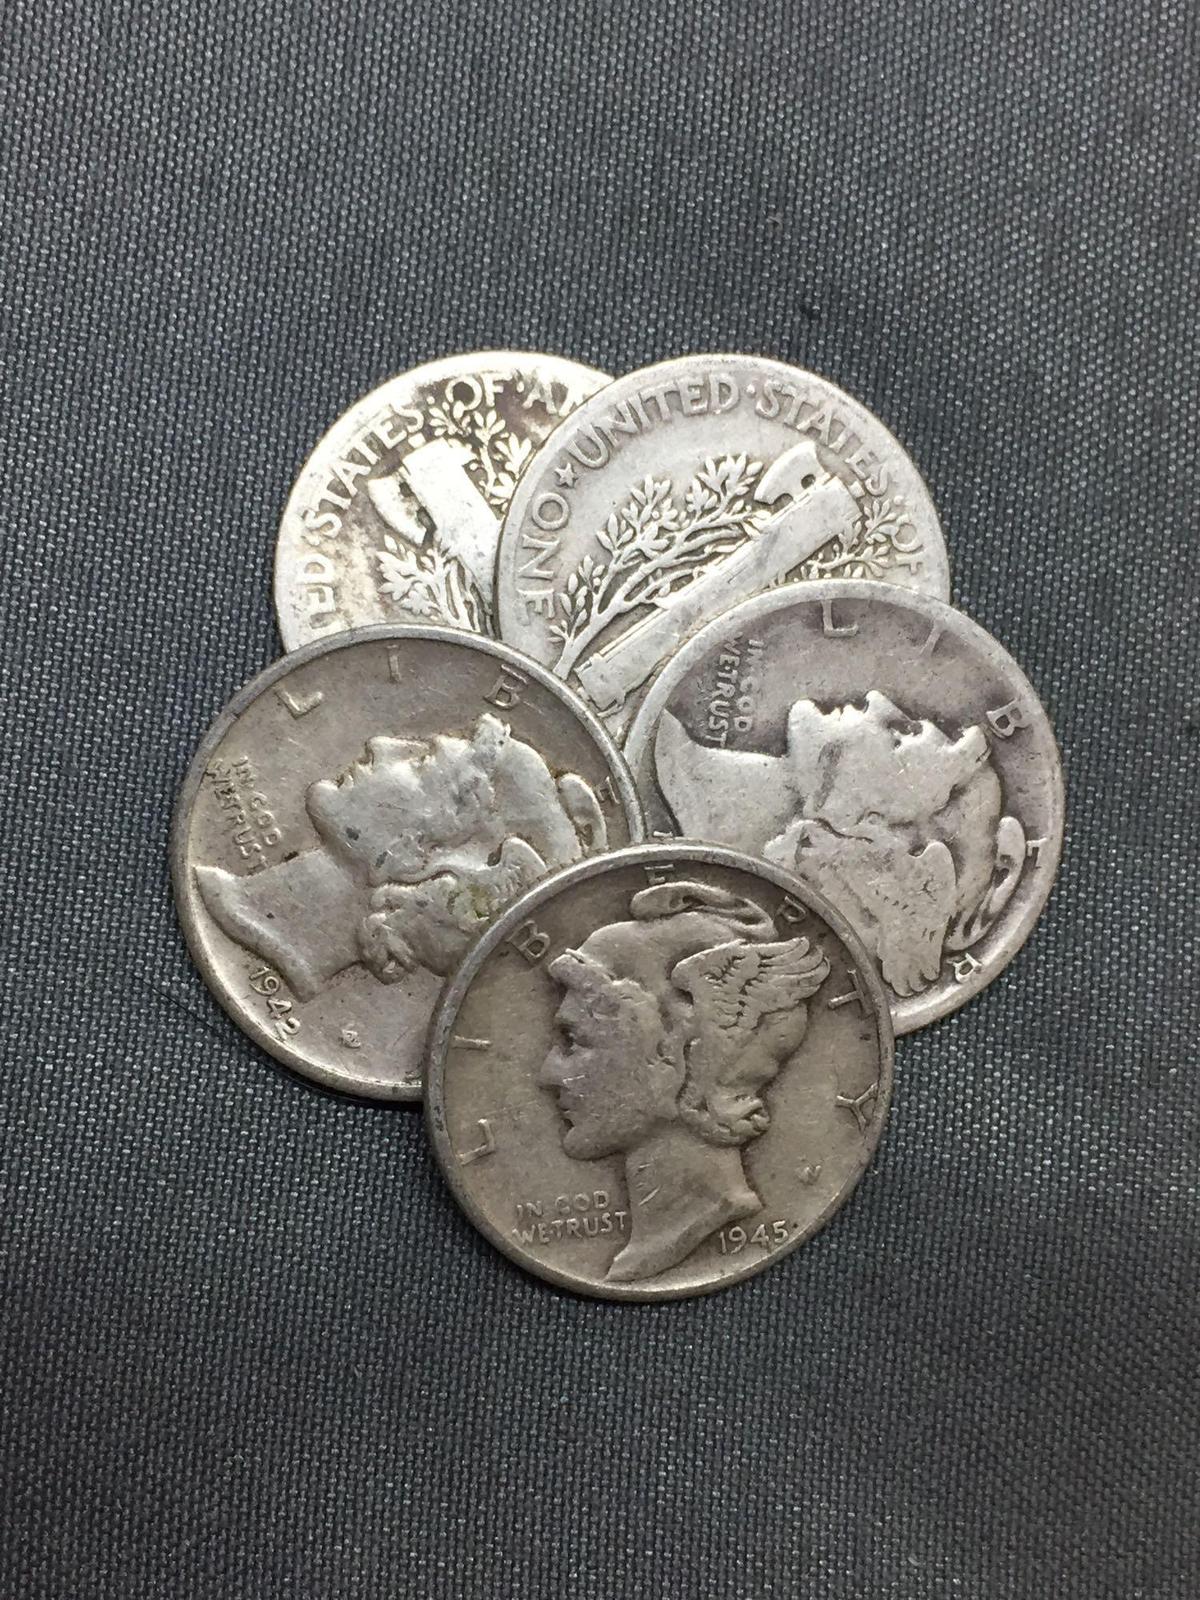 Random Date Mercury Dime - 90% Silver Coins (TIMES THE BID)